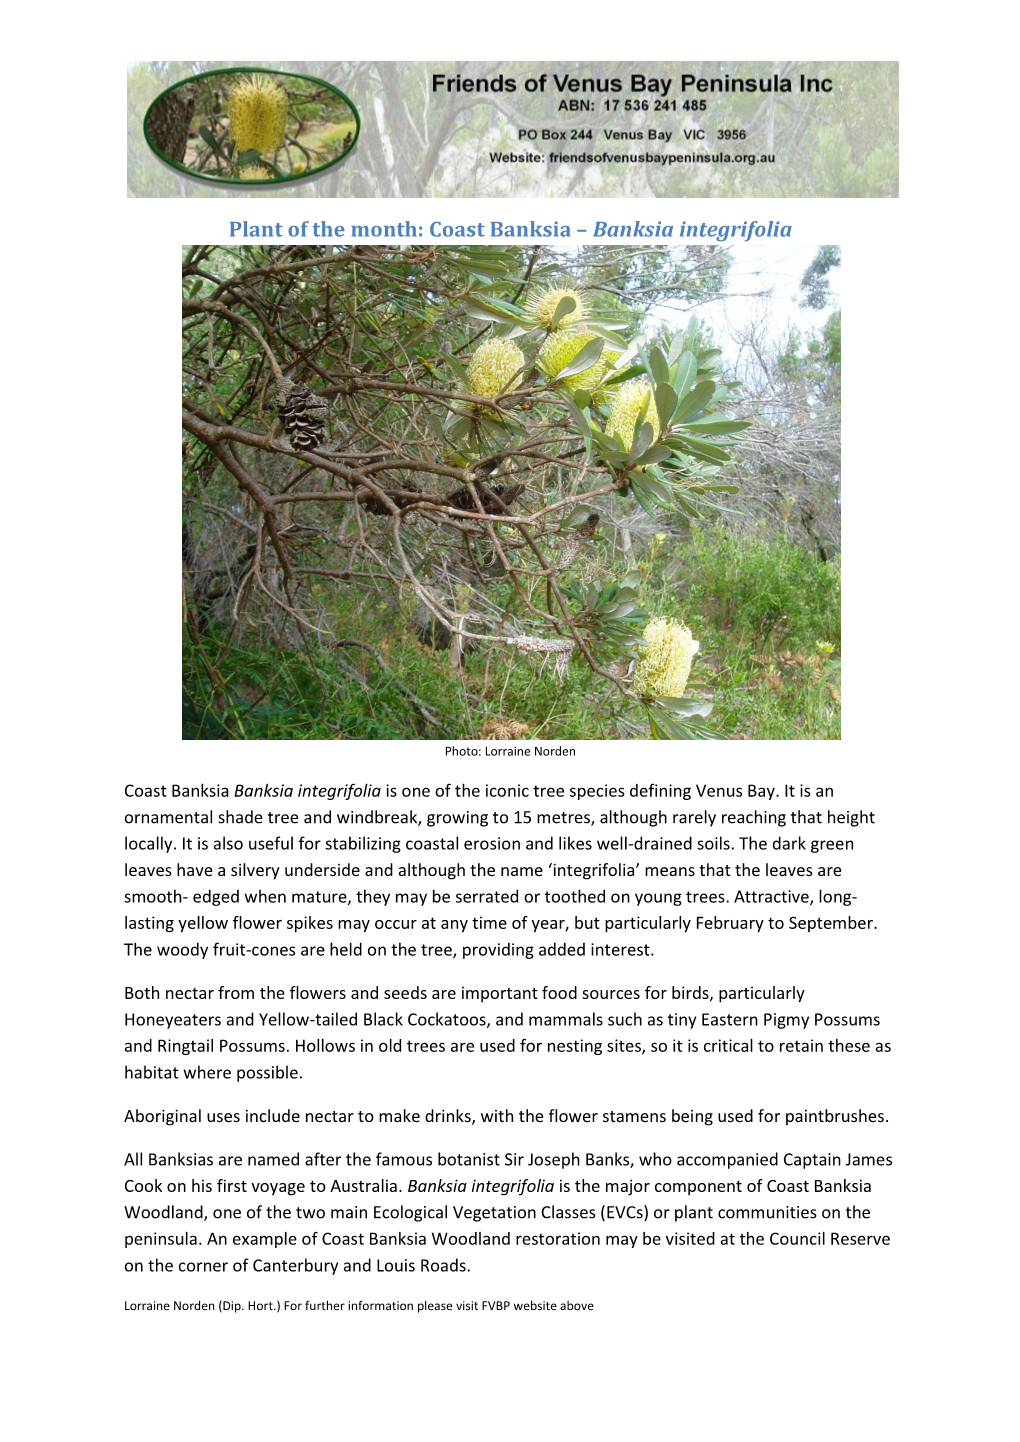 Coast Banksia – Banksia Integrifolia